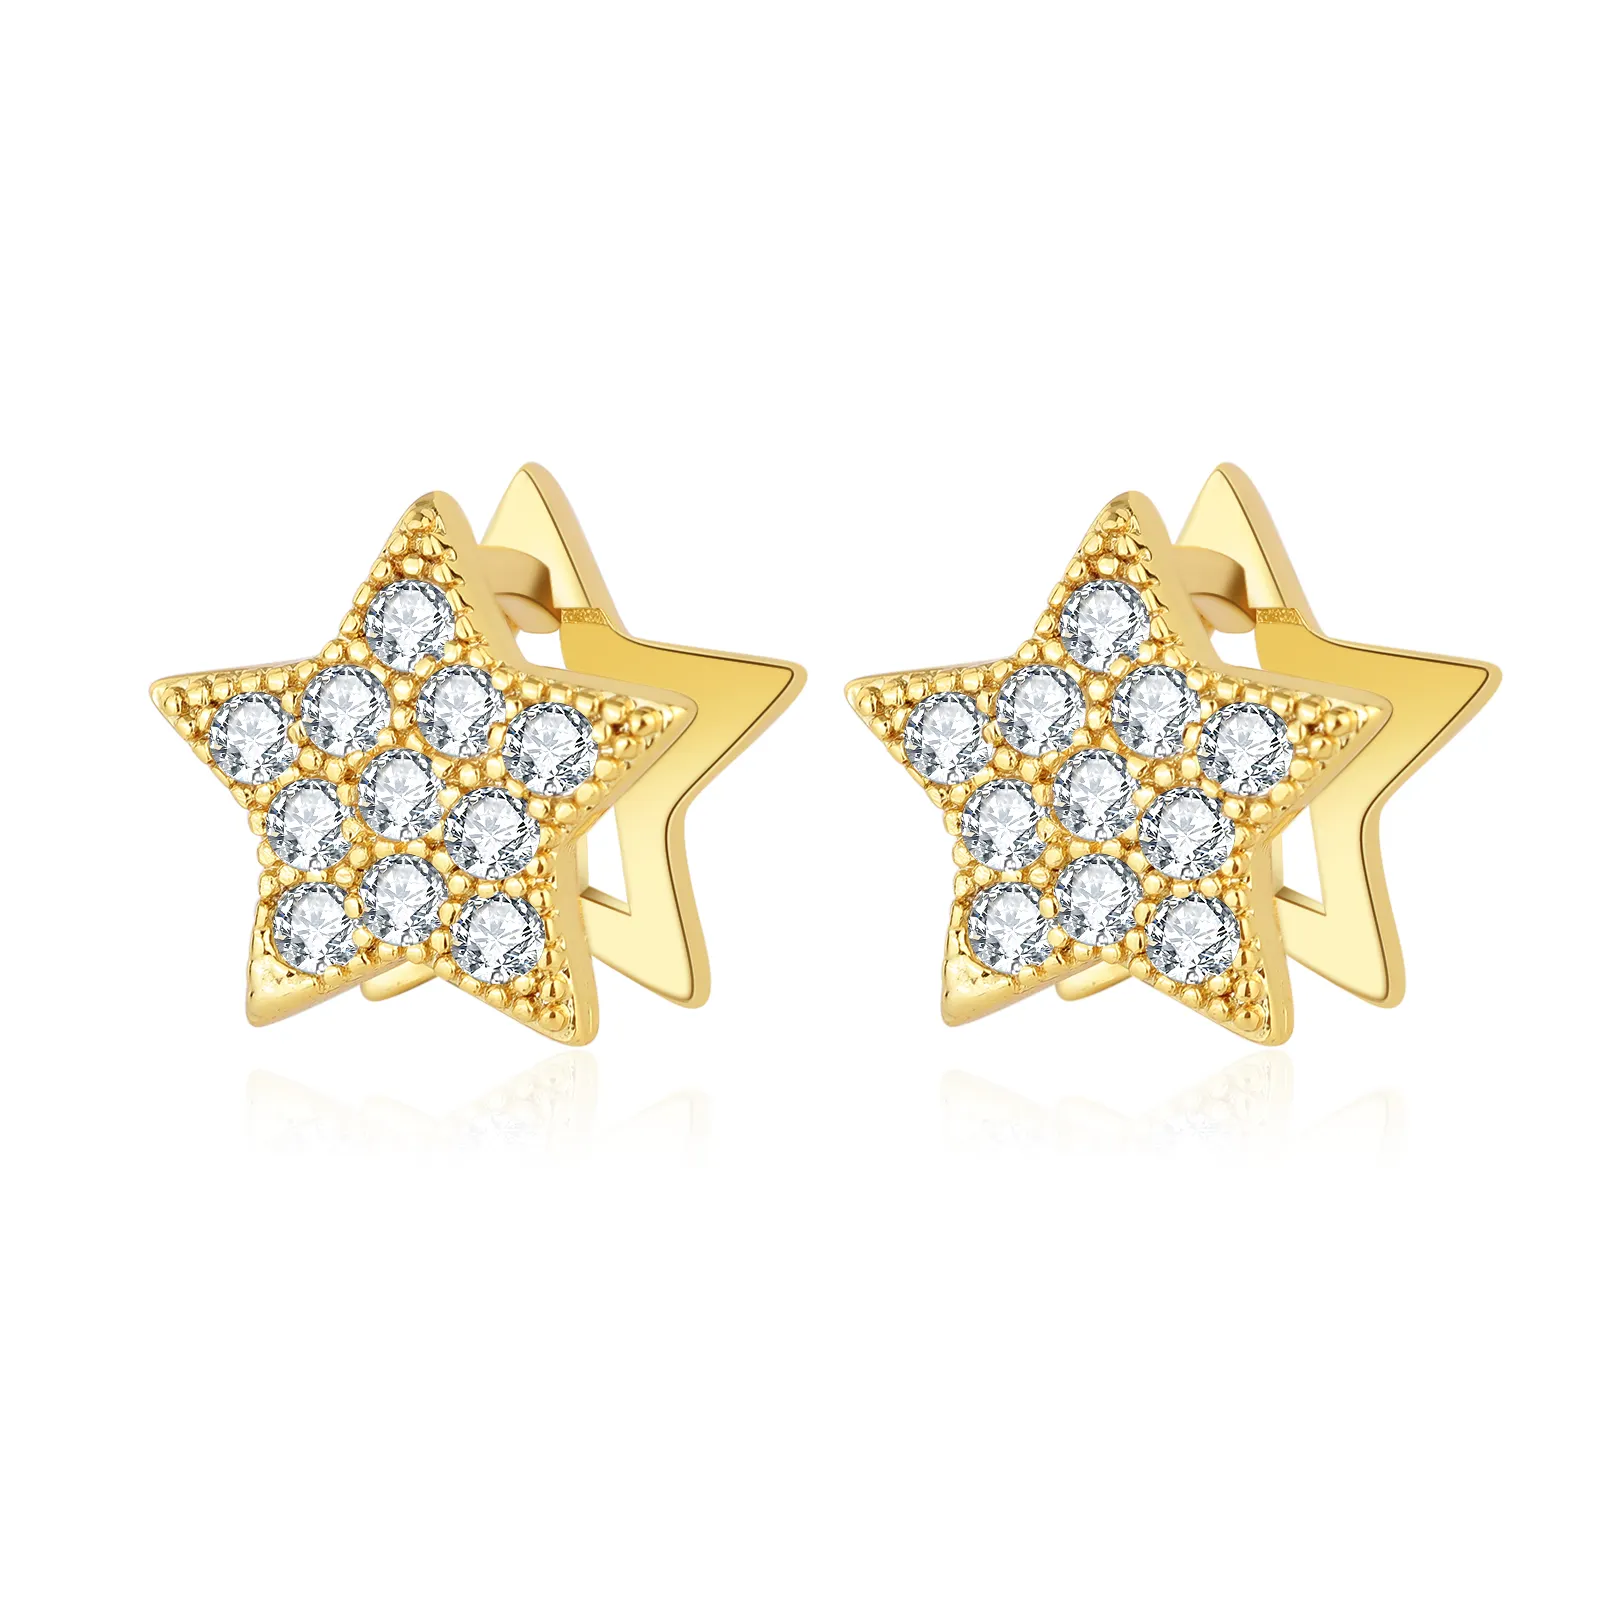 Sıcak satış 18K altın kaplama takı S925 ayar gümüş Pentagram yıldız şekilli zirkon damızlık küpe